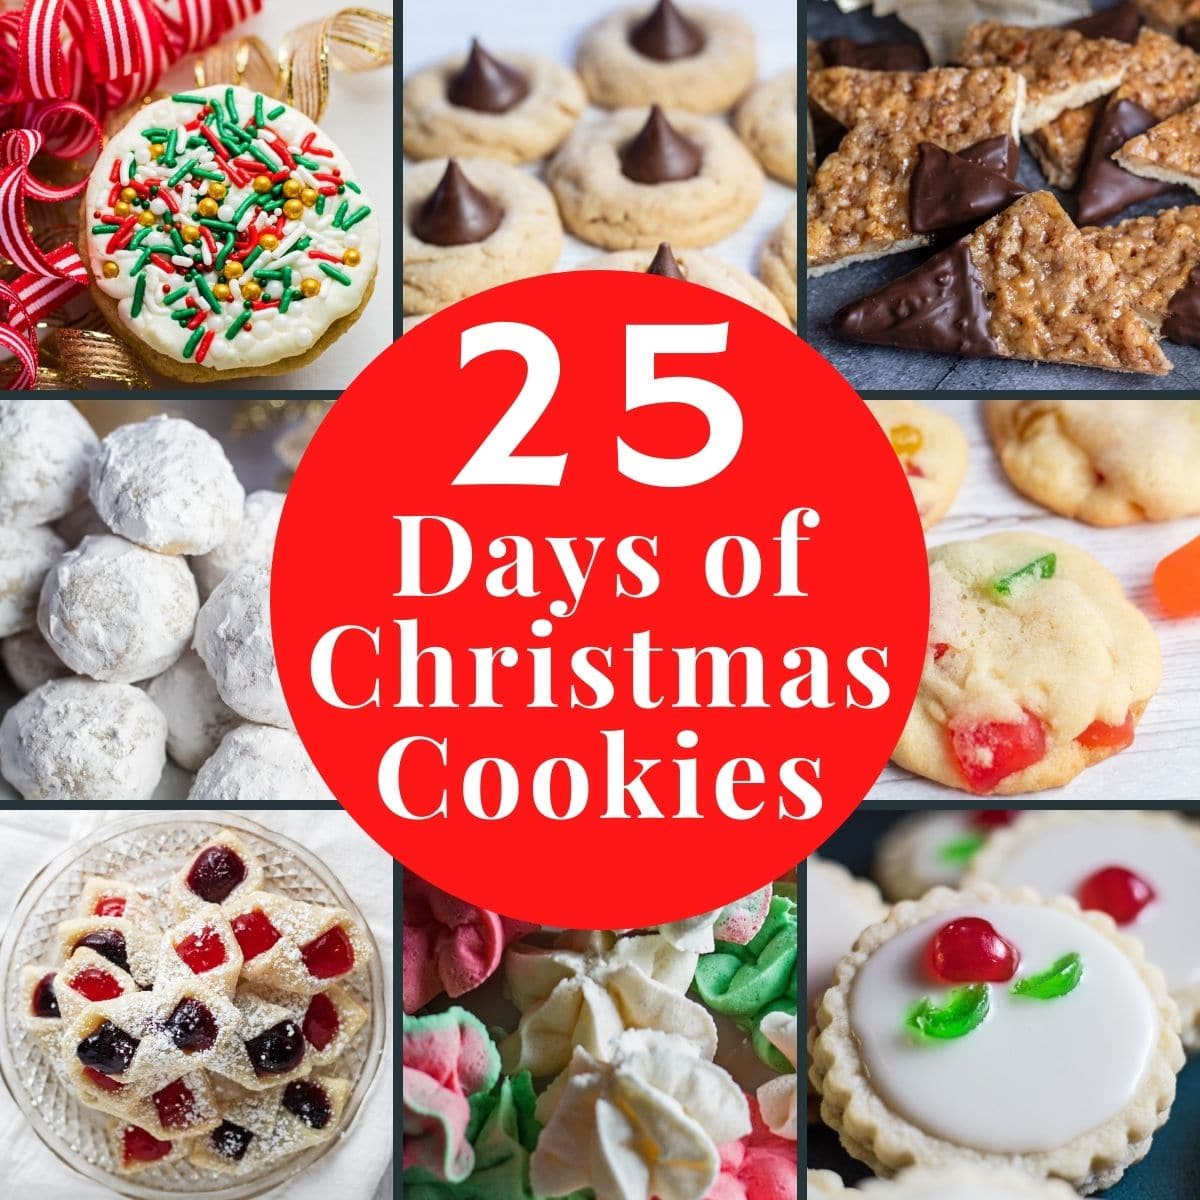 Imagen de collage de 25 días de galletas navideñas con 8 mosaicos y superposición de texto.